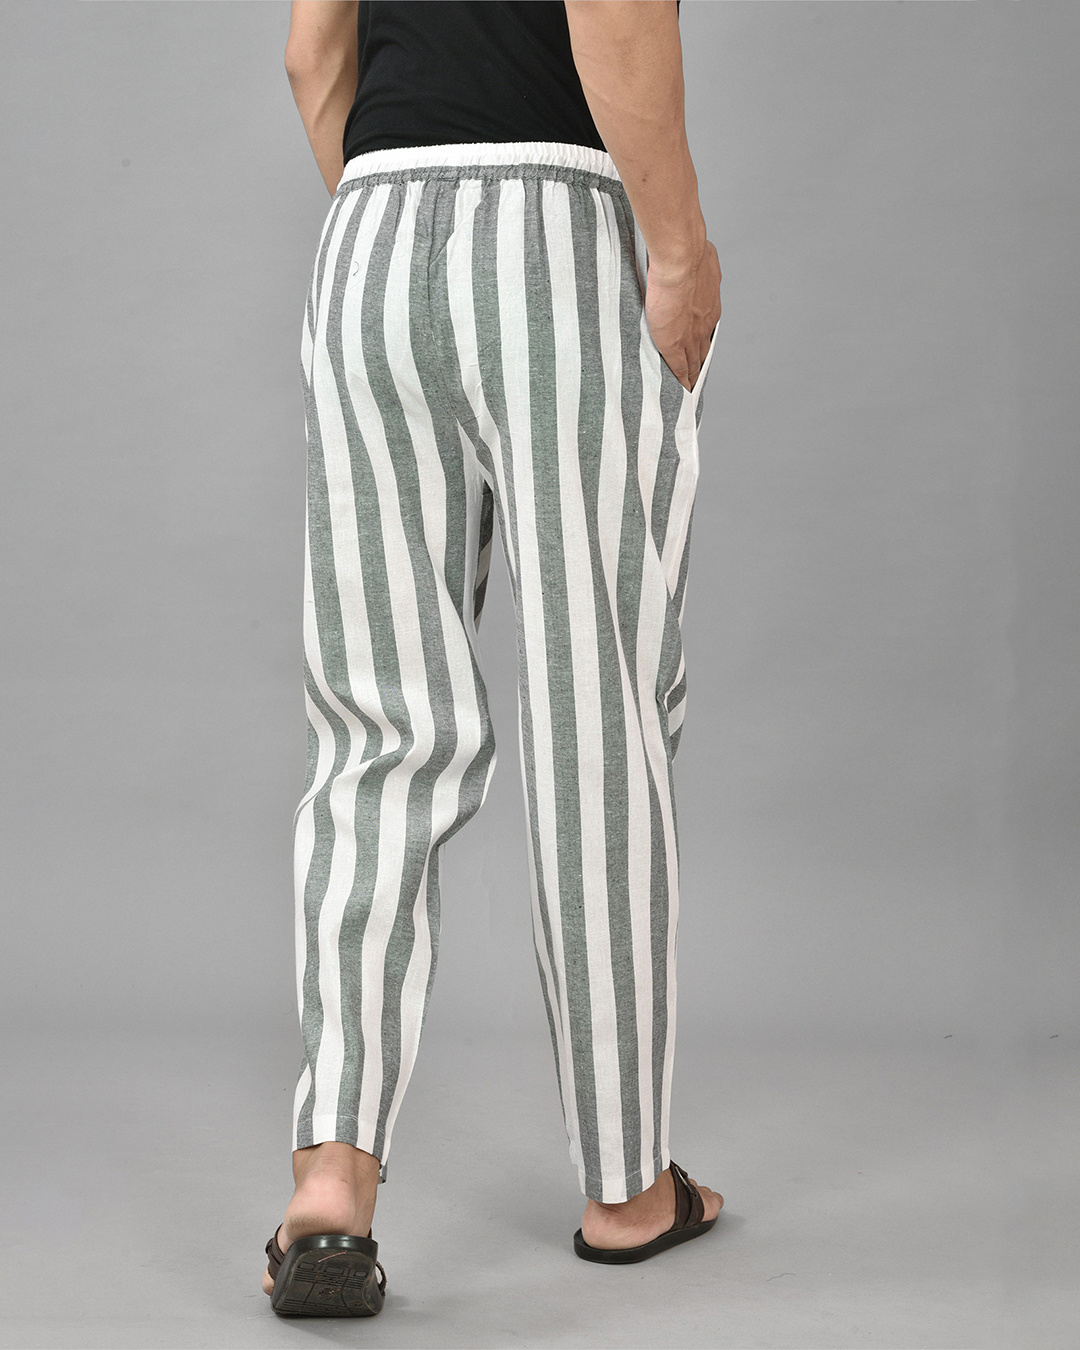 Stripe printed pants  Easy Buy India